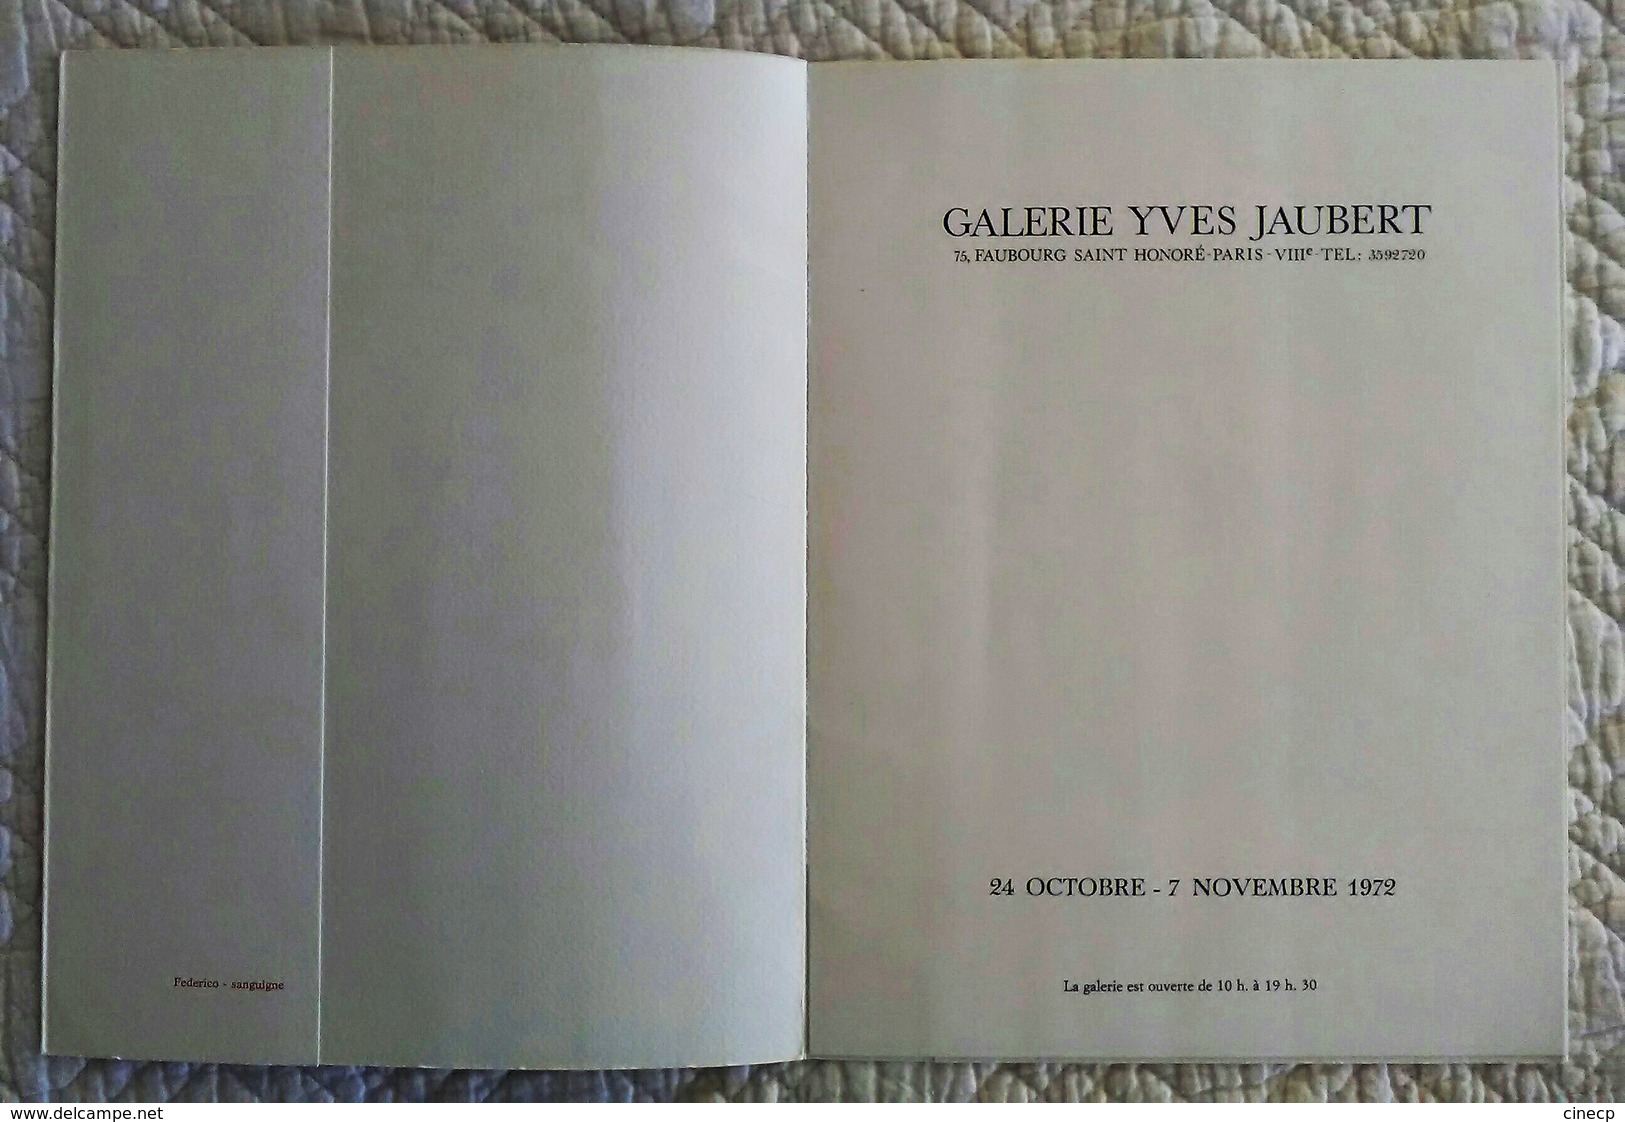 Catalogue d'exposition de peinture ancien illustré SALMOIRAGHI 1972 Sanguine enfant femme nu